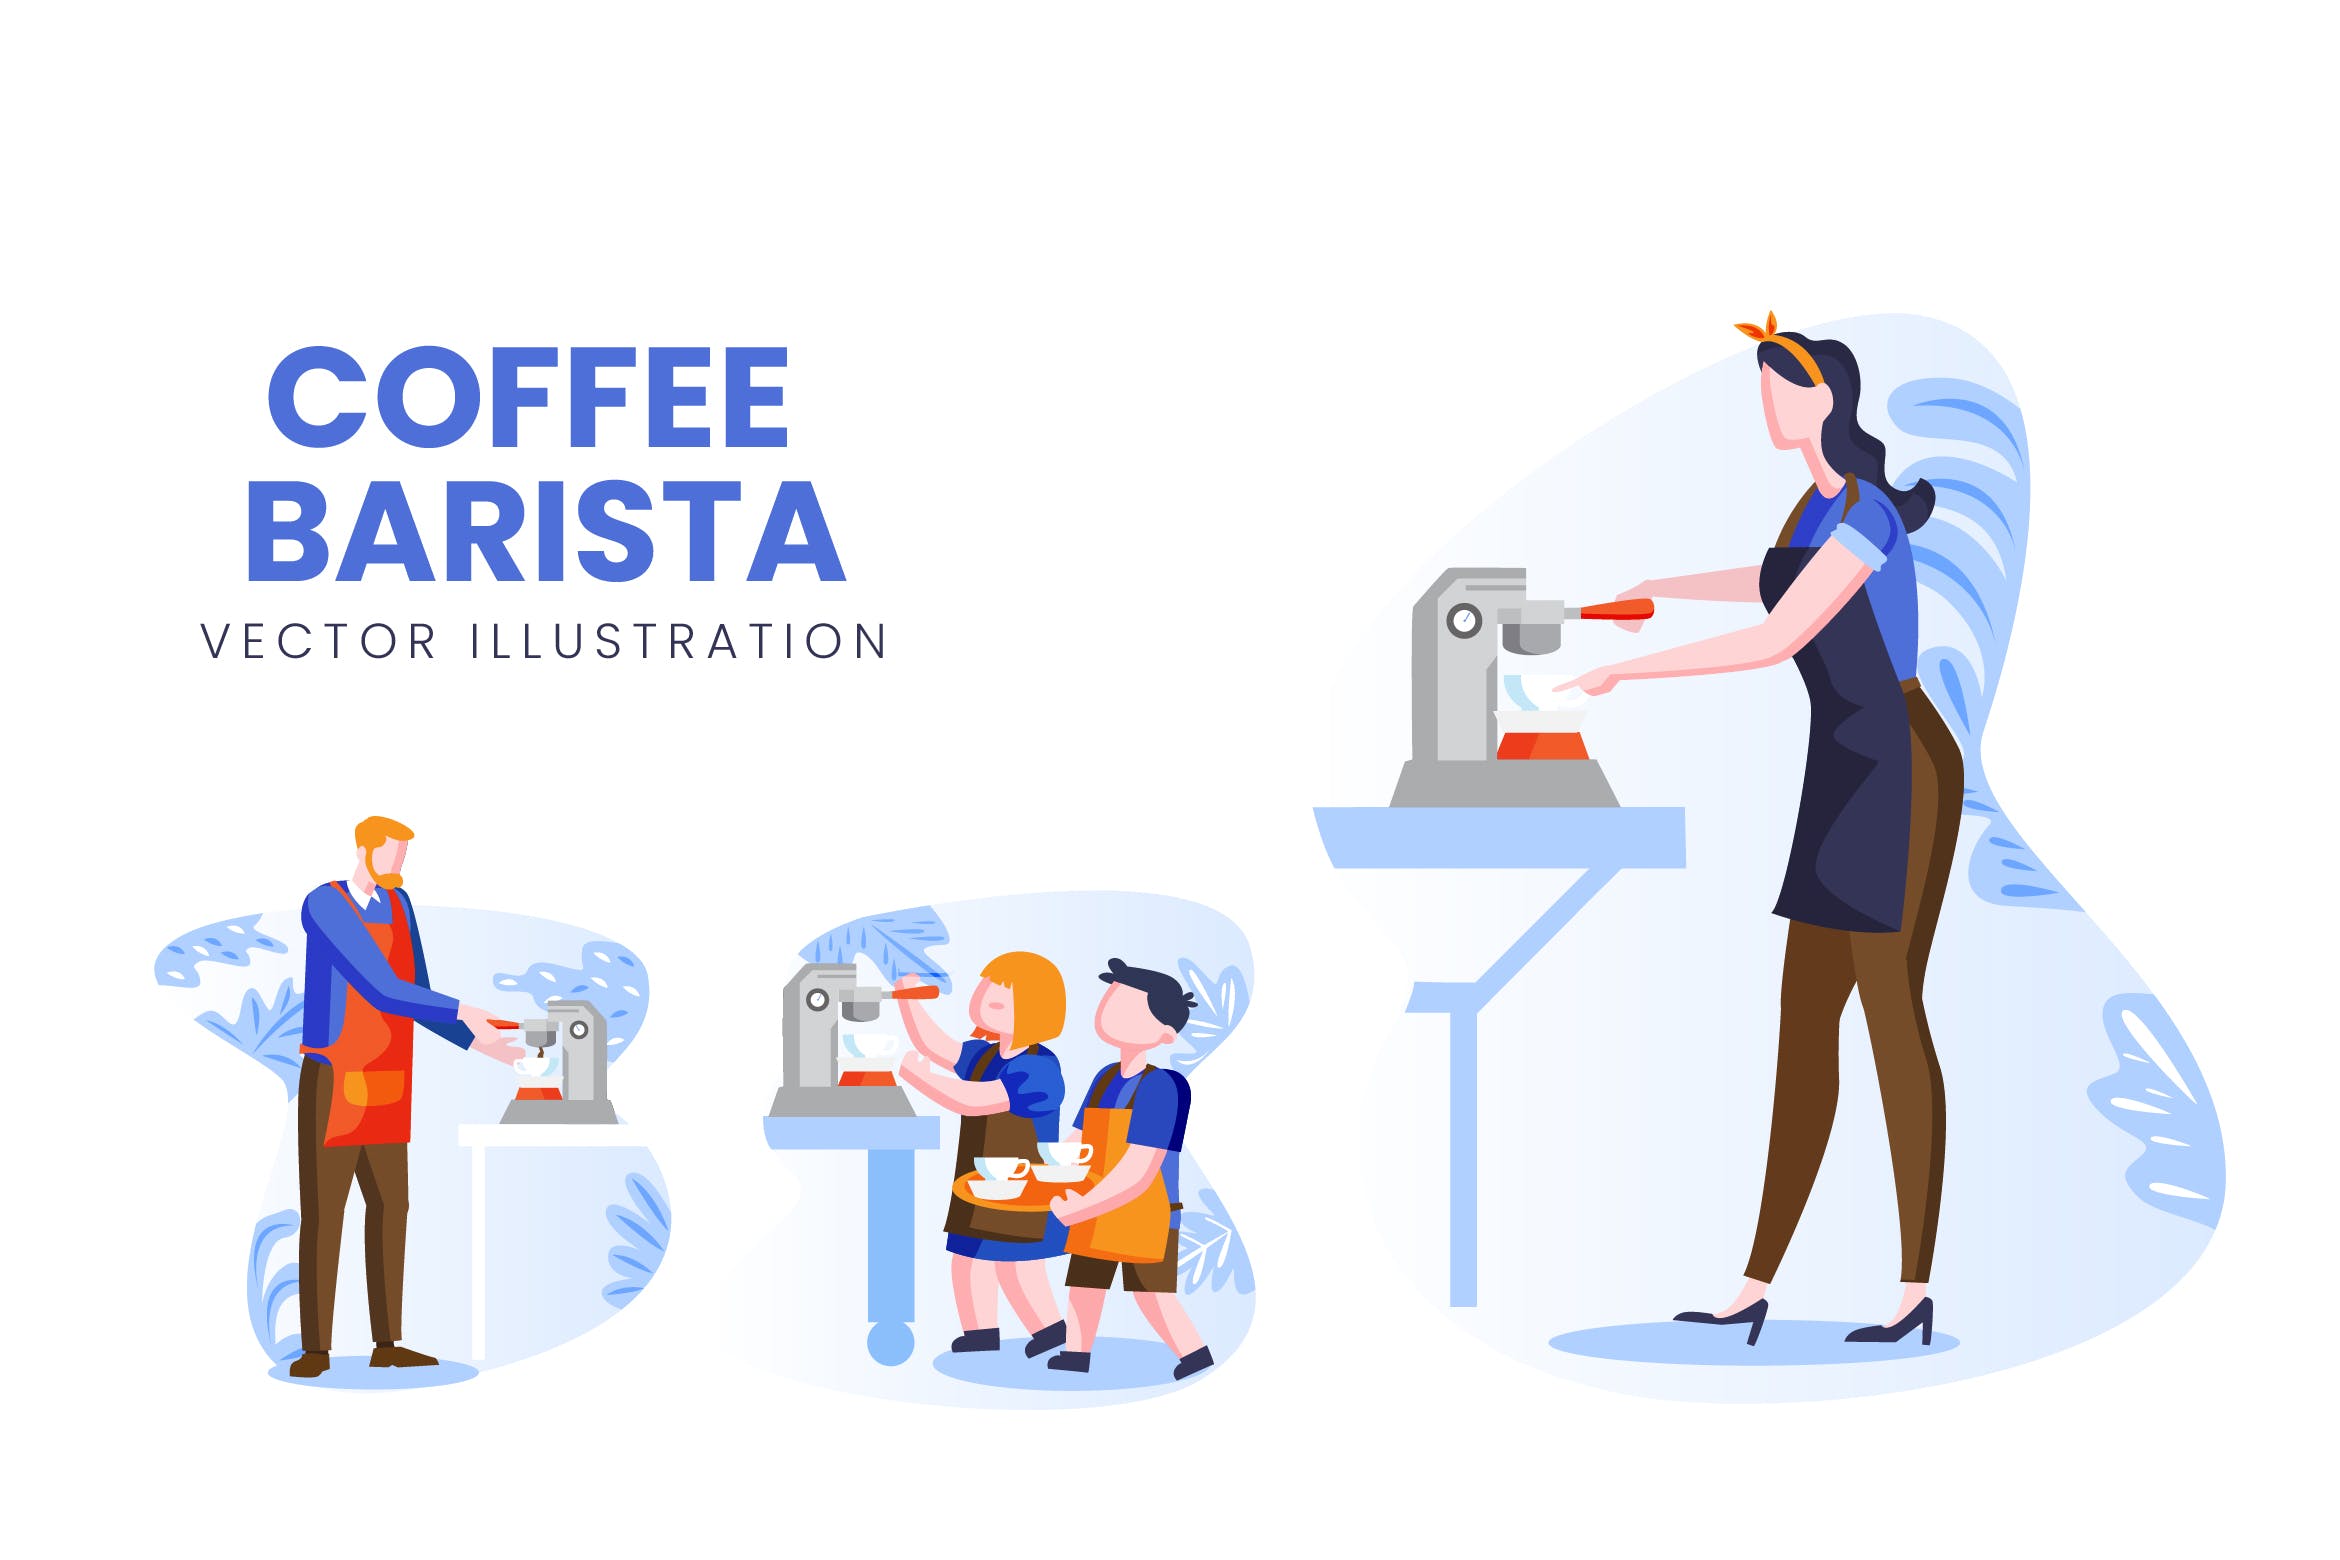 咖啡师人物形象非凡图库精选手绘插画矢量素材 Coffee Barista Vector Character Set插图